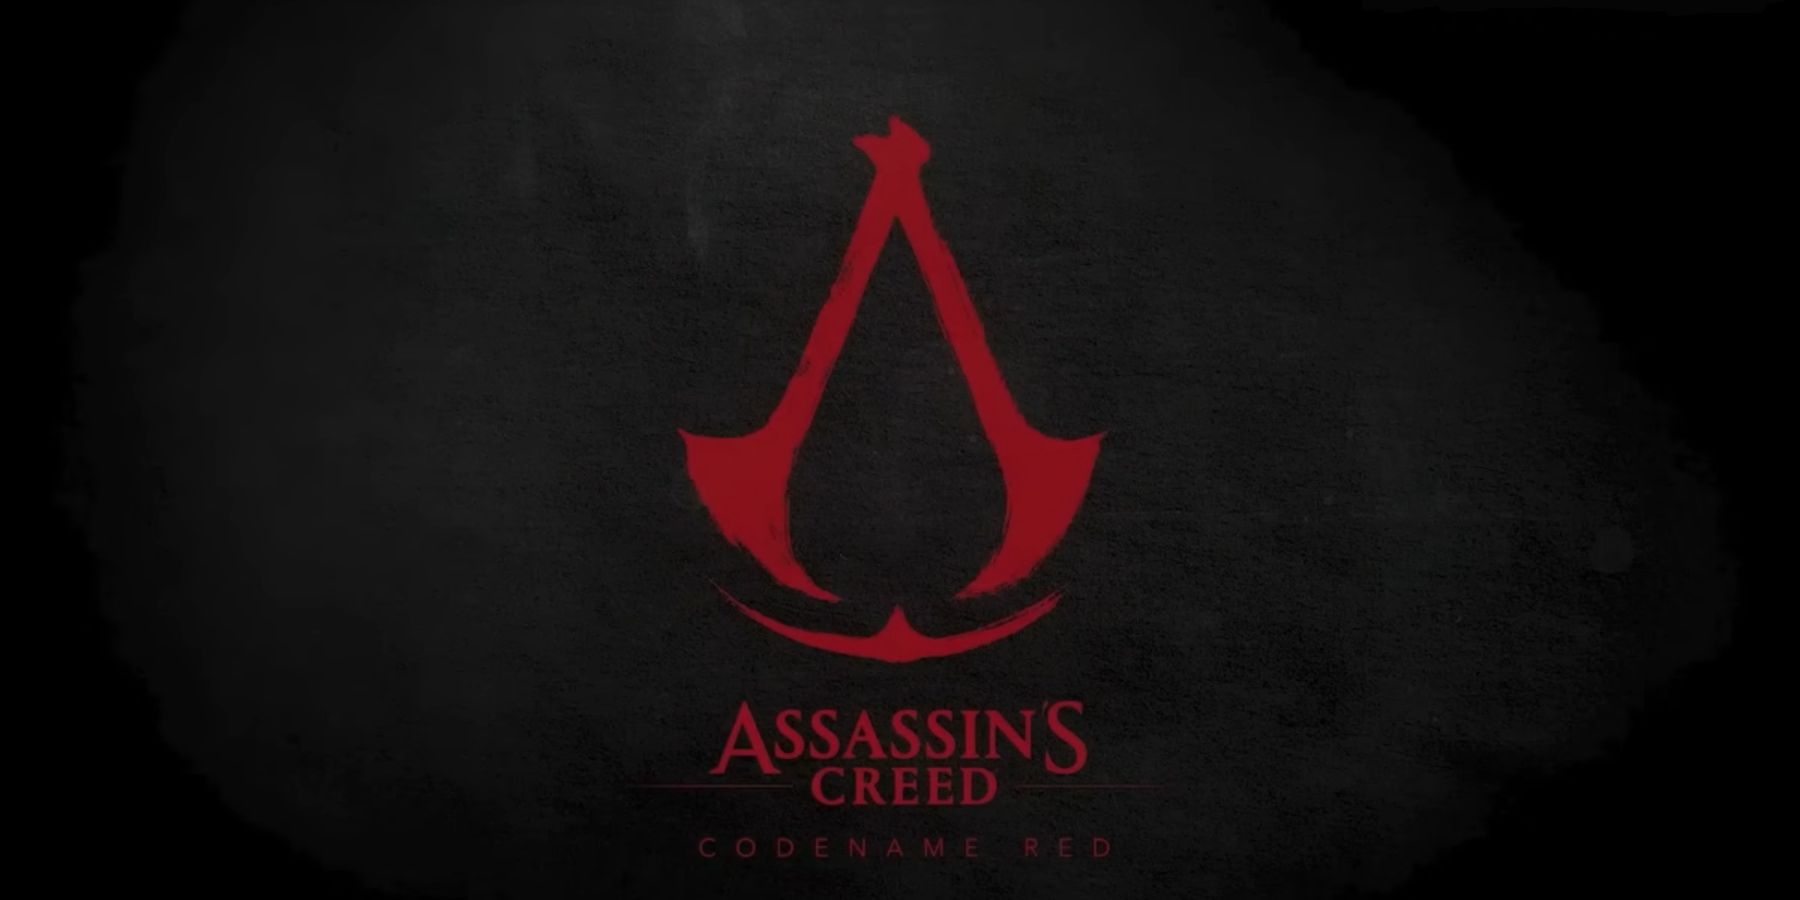 Ubisoftin työntekijän väitteet kehittäjät ovat jättäneet yrityksen Assassin’s Creed Red Director -sovelluksen takia